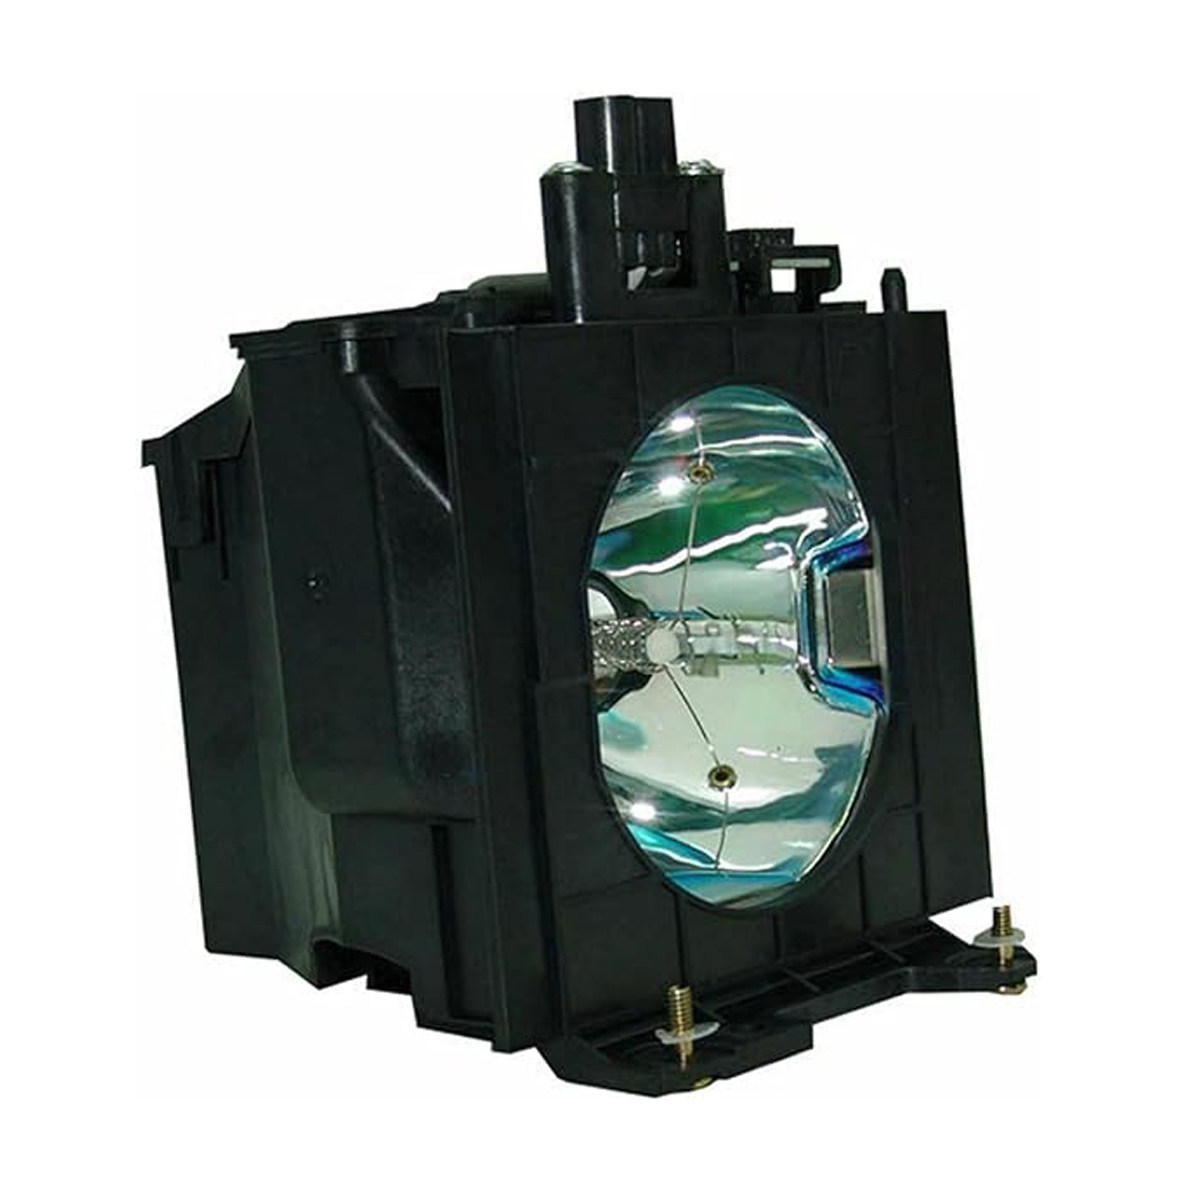 Replacement Projector lamp ET-LAD57W For PANASONIC PT-DW5100 PT-D5100 PT-D5700